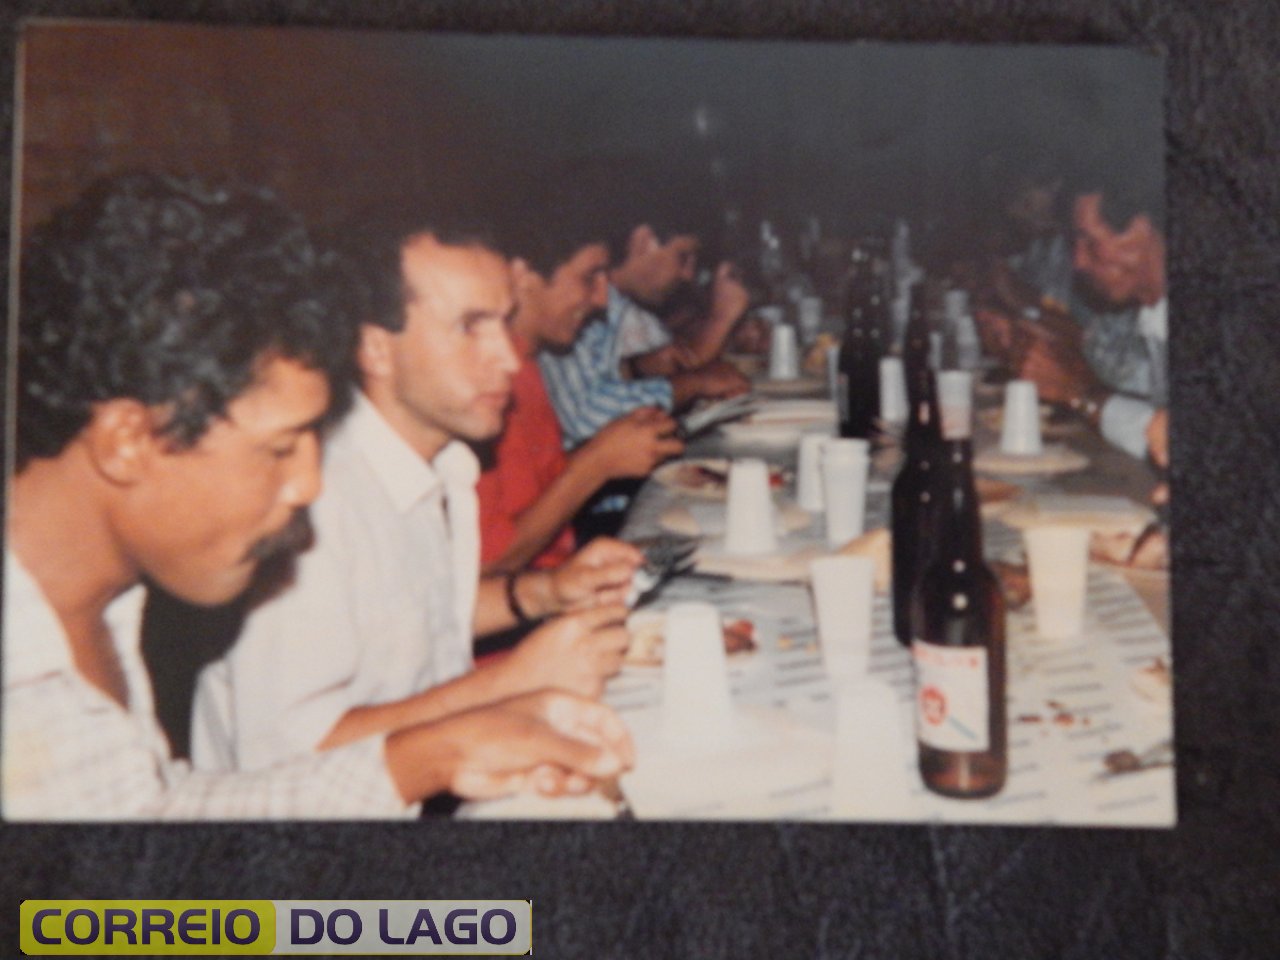 Festa de Casamento de Marta Correia em Vera Cruz do Oeste, 19 de dezembro de 1987. João R. Correia é o 2º da foto da esquerda para direita.